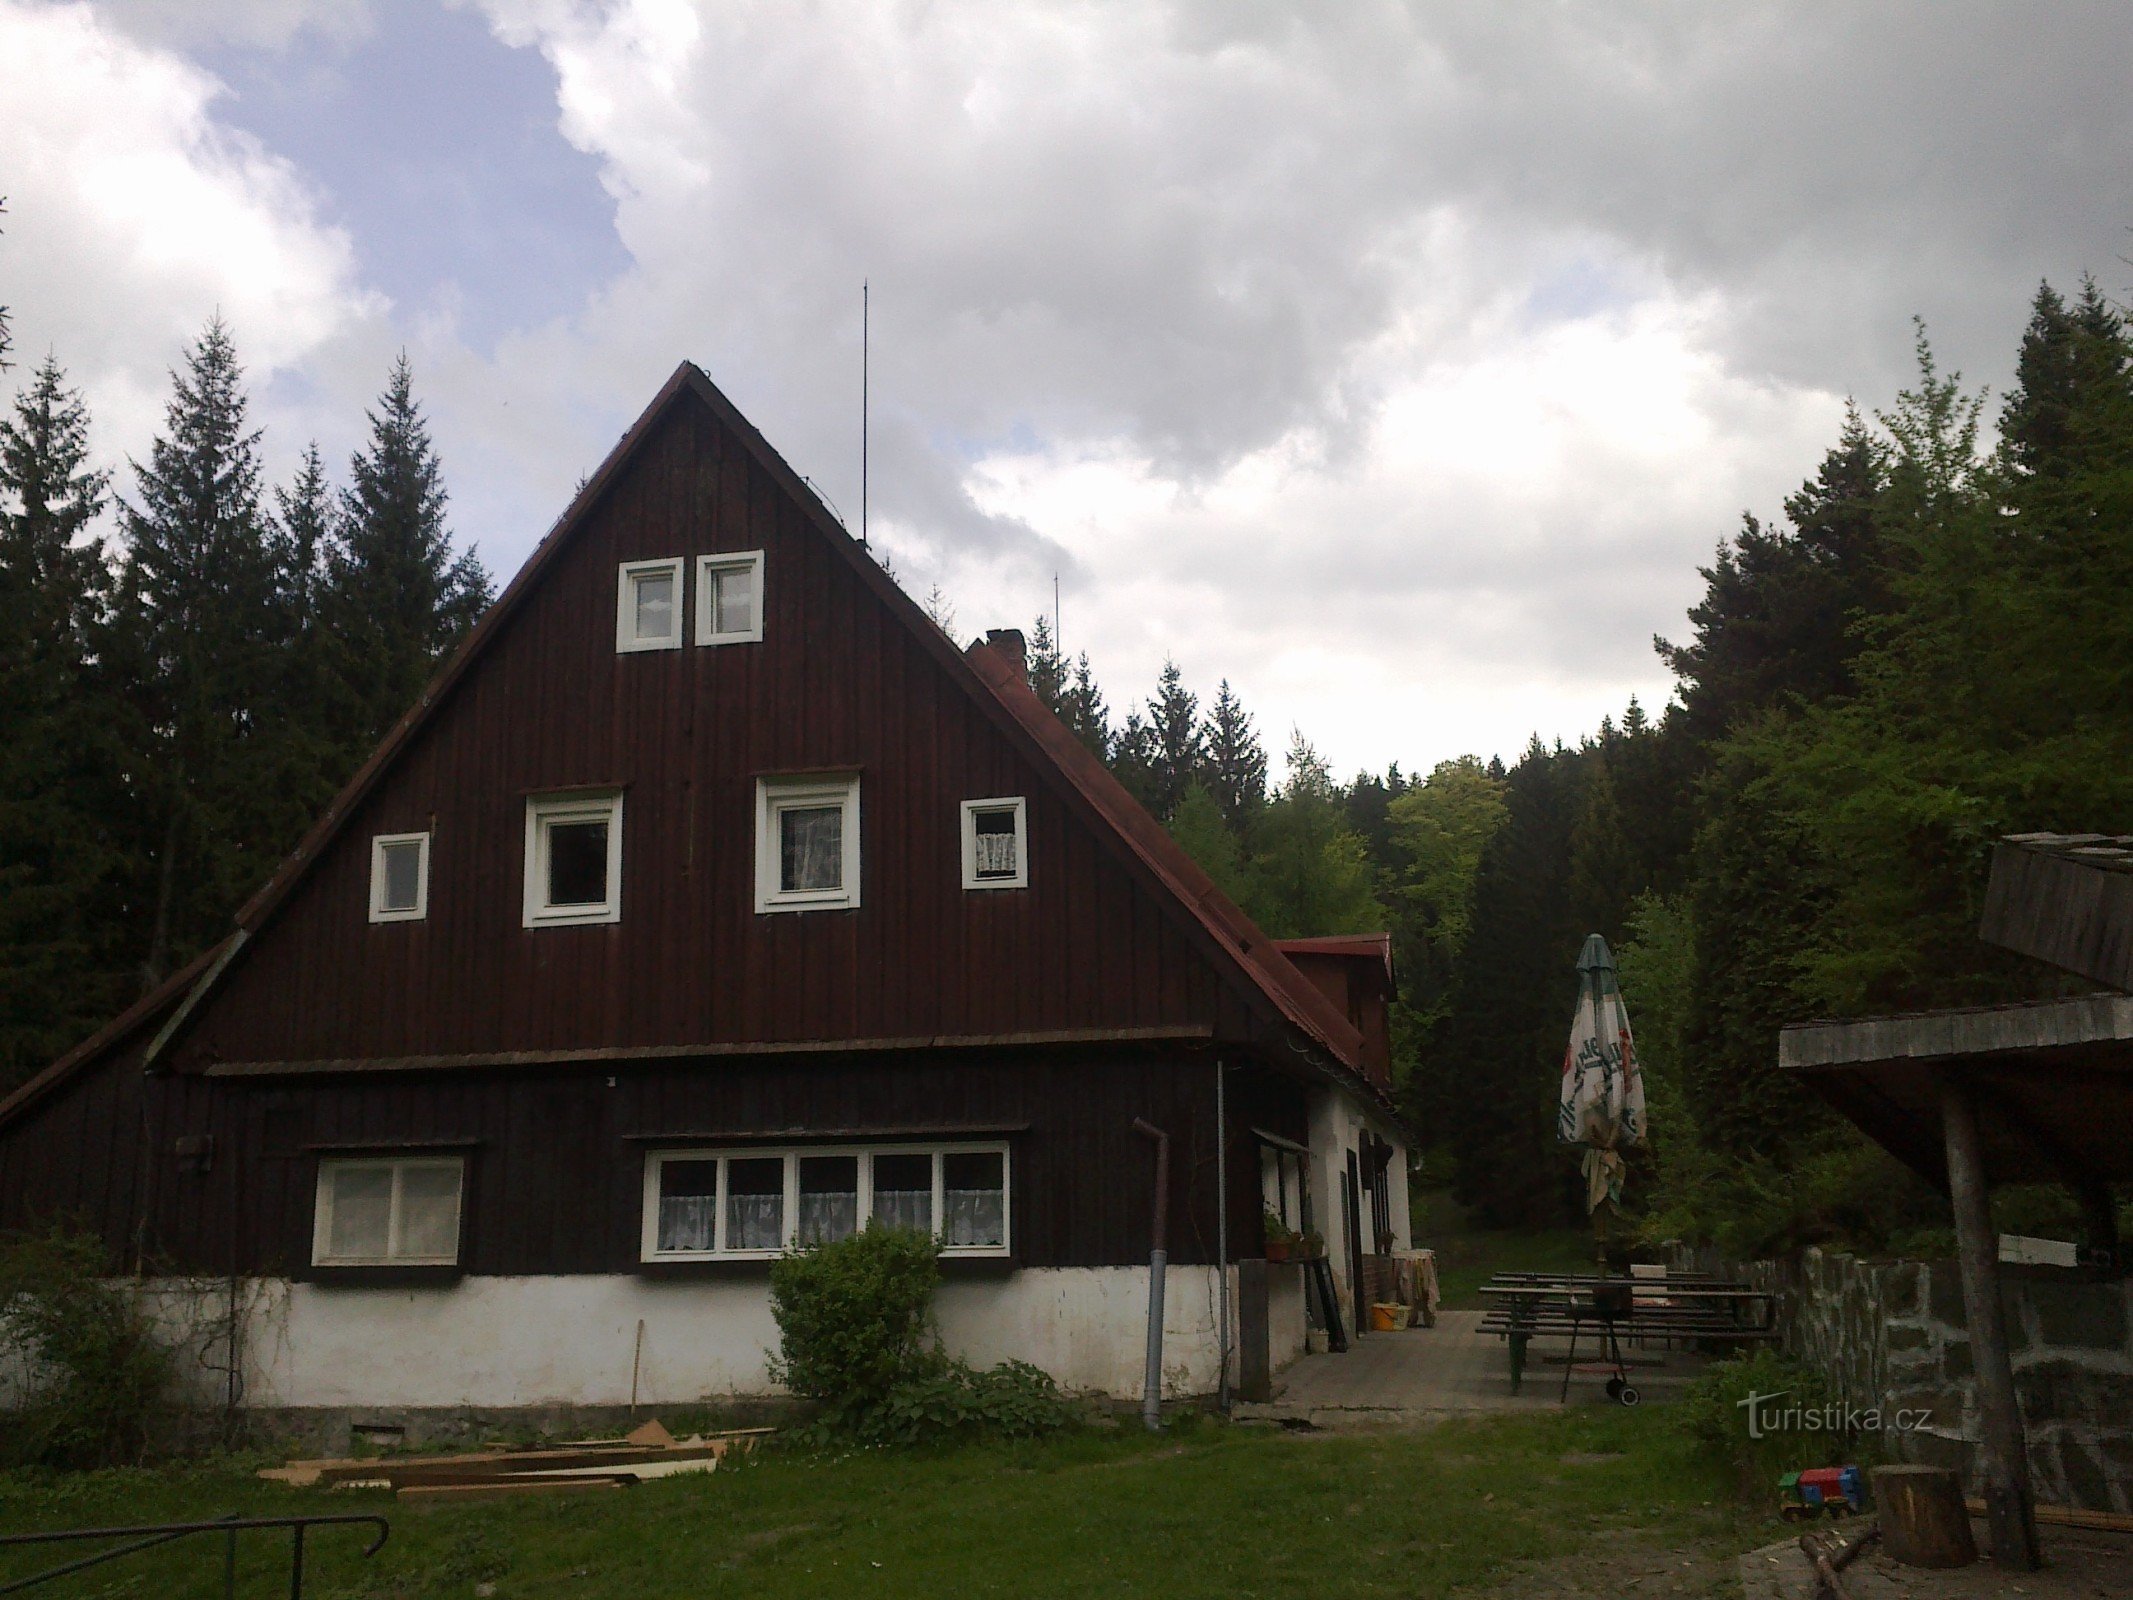 Chata Svornost, nơi bắt đầu cuộc hành trình của chúng tôi.